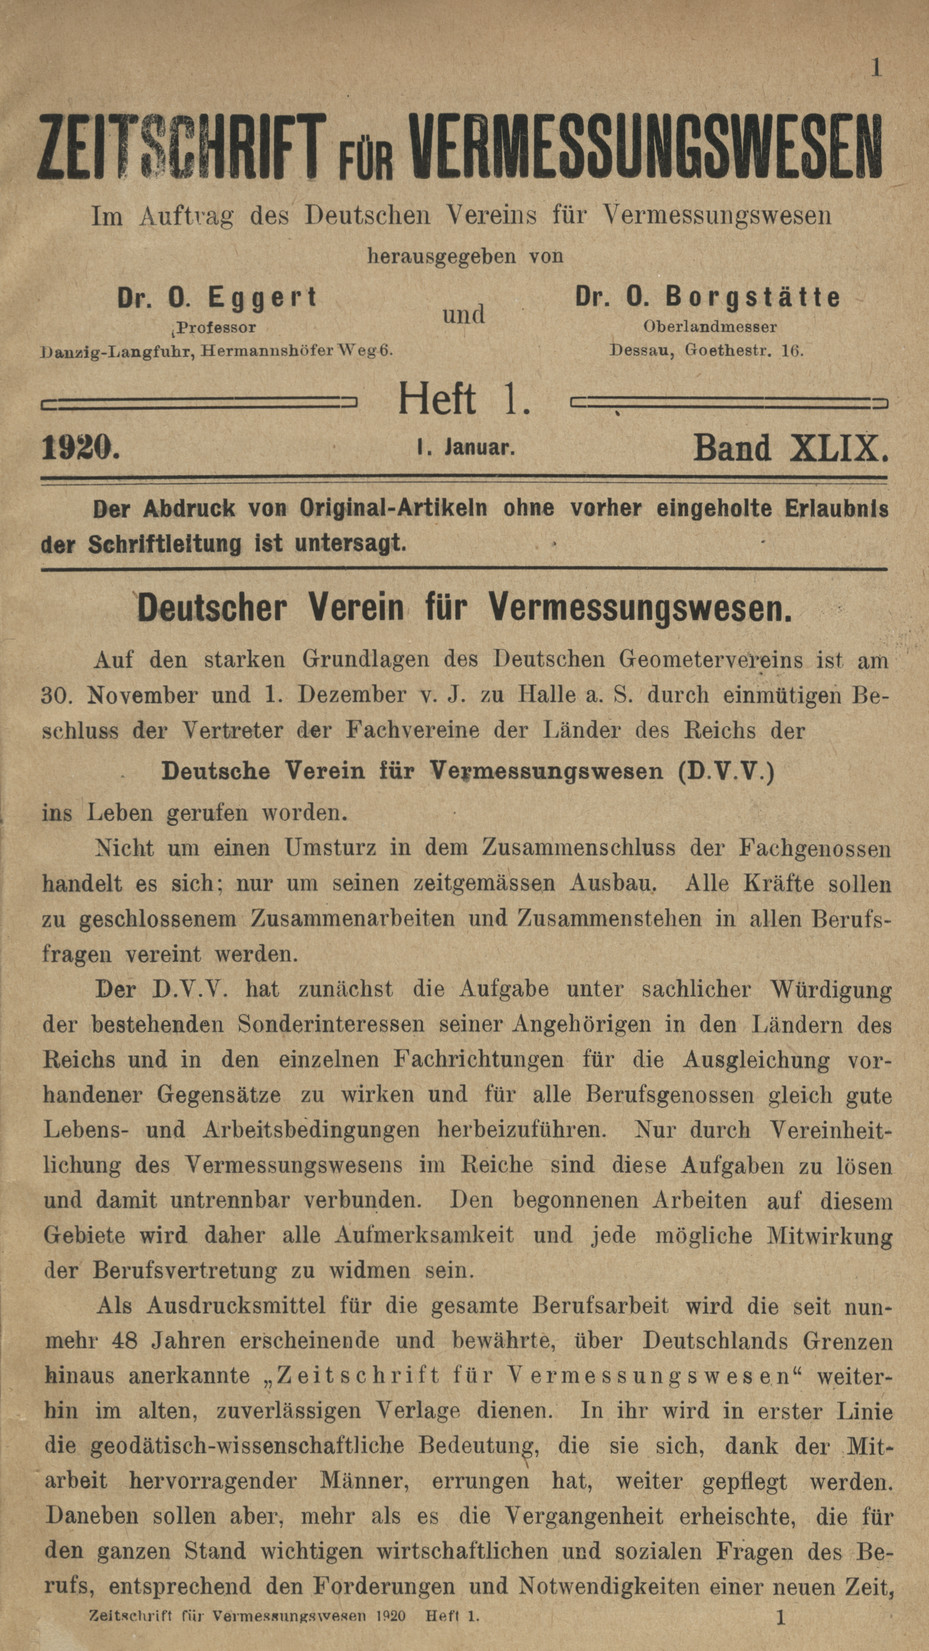 Zeitschrift für Vermessungswesen, Heft 1, Band XLIX